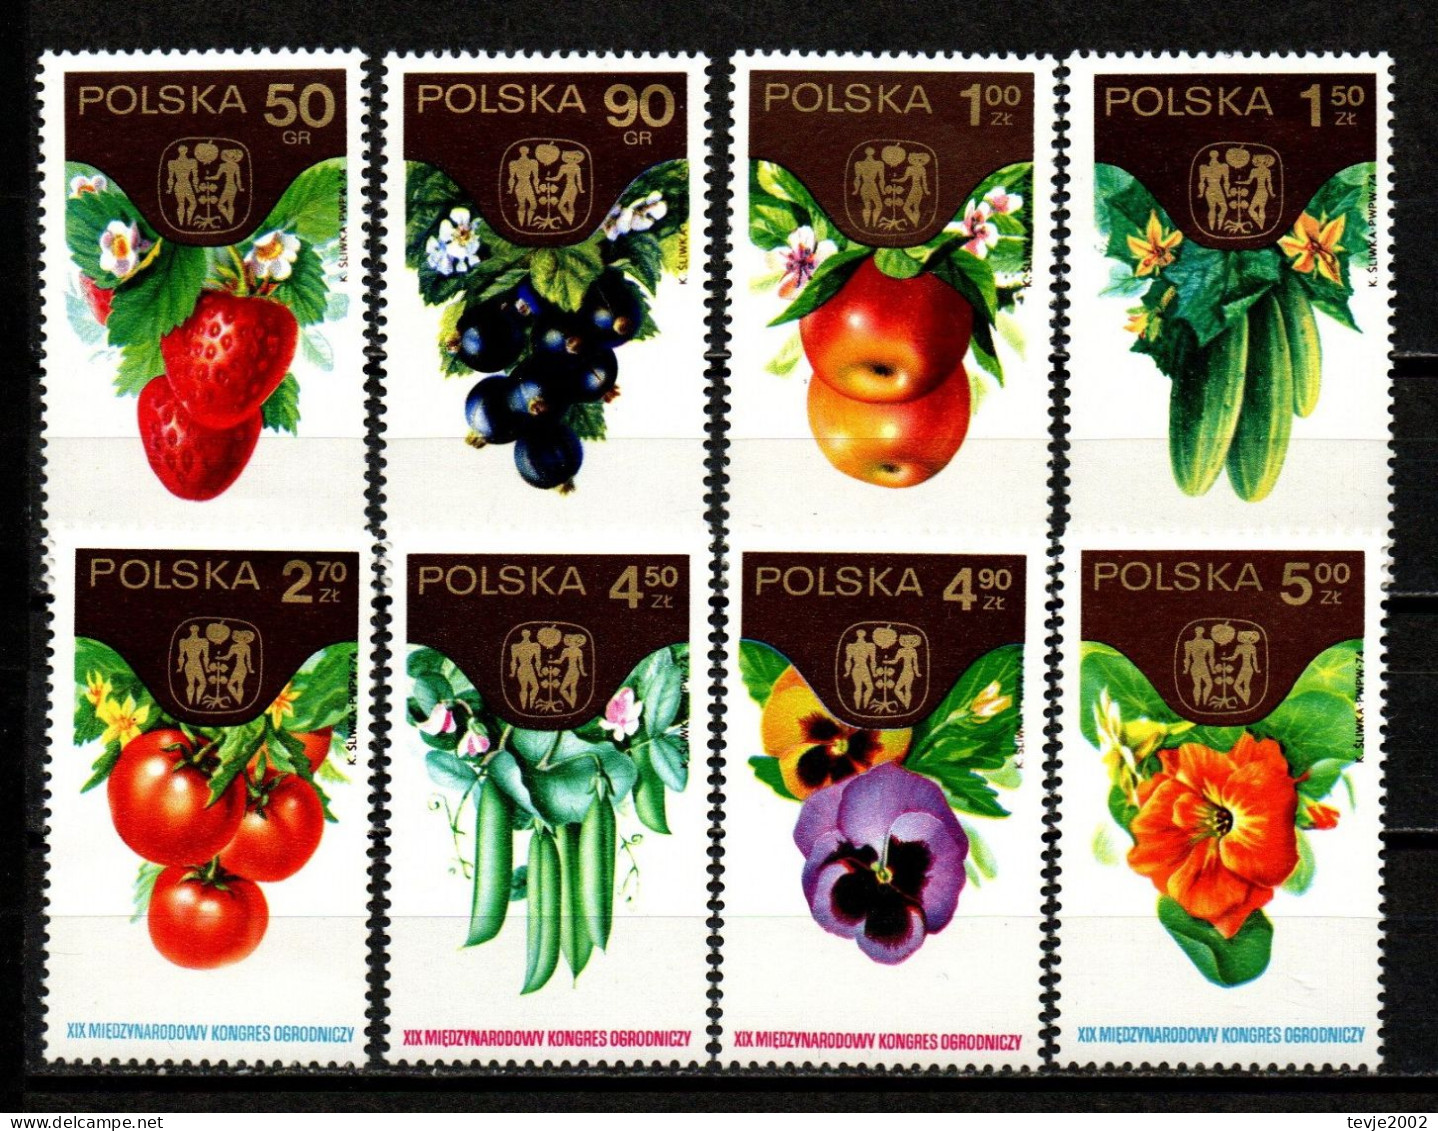 Polen 1974 - Mi.Nr. 2329 - 2336 - Postfrisch MNH - Gemüse Vegetable Obst Fruits - Vegetables